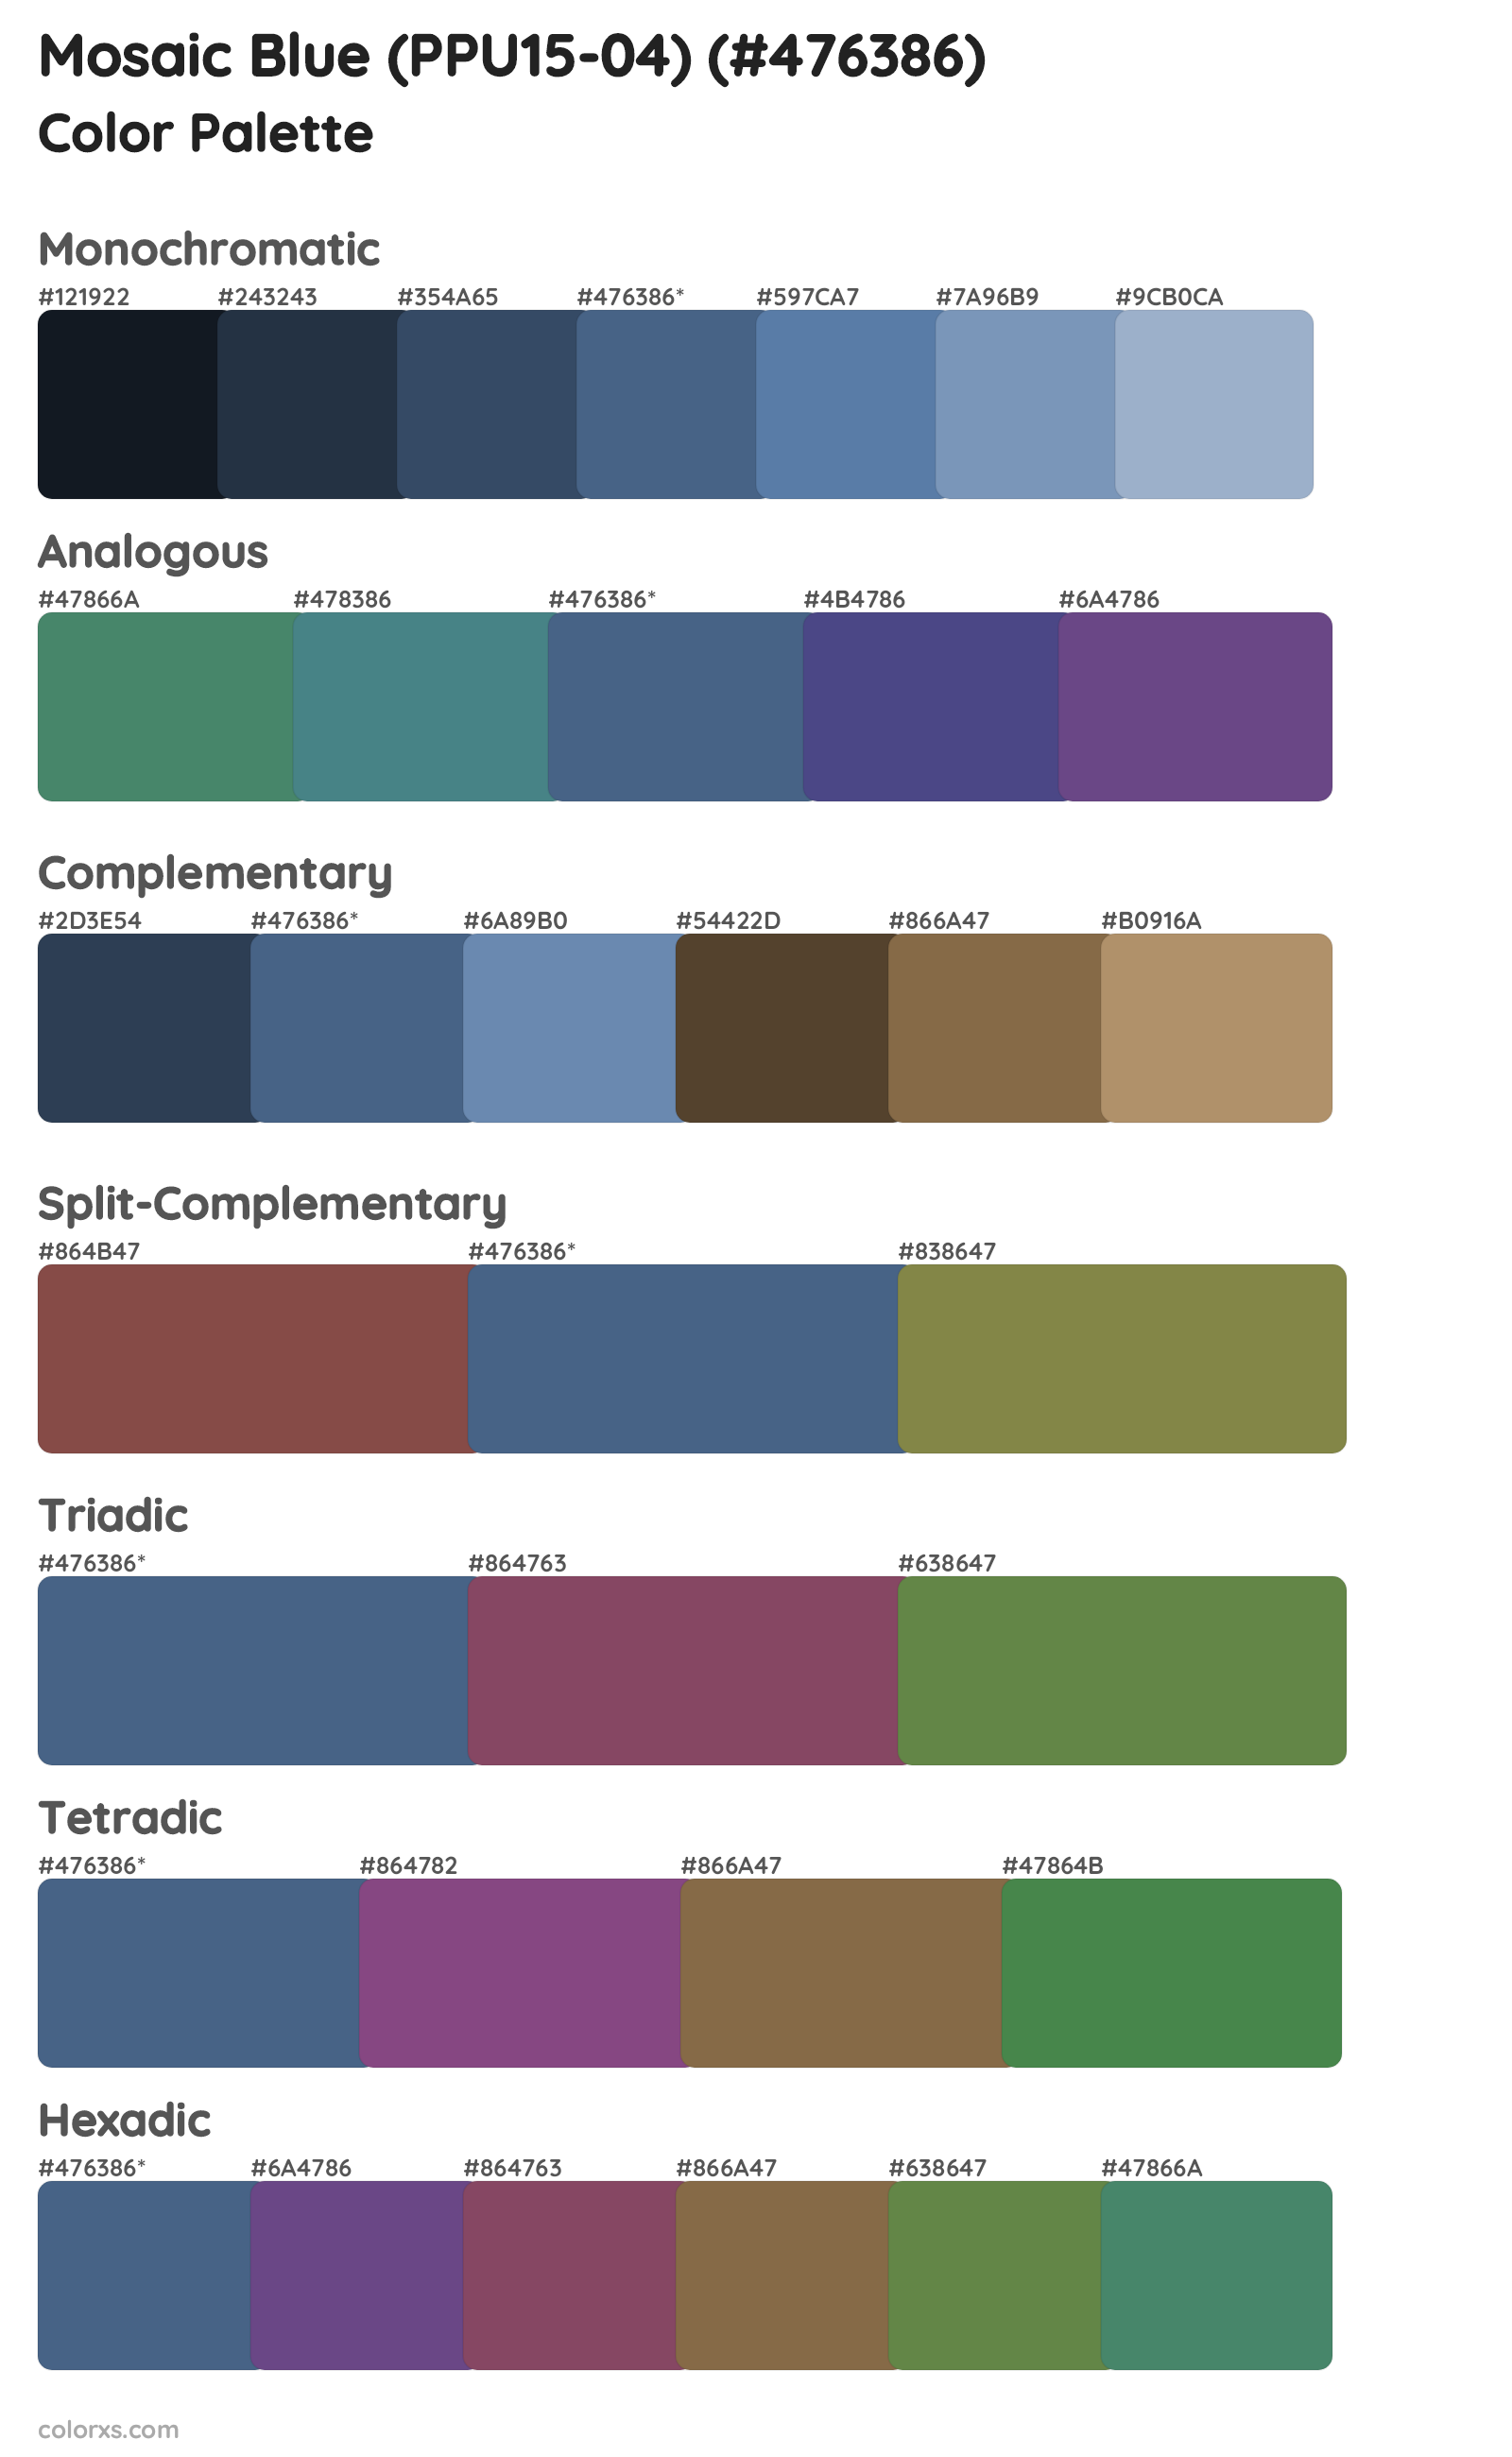 Mosaic Blue (PPU15-04) Color Scheme Palettes